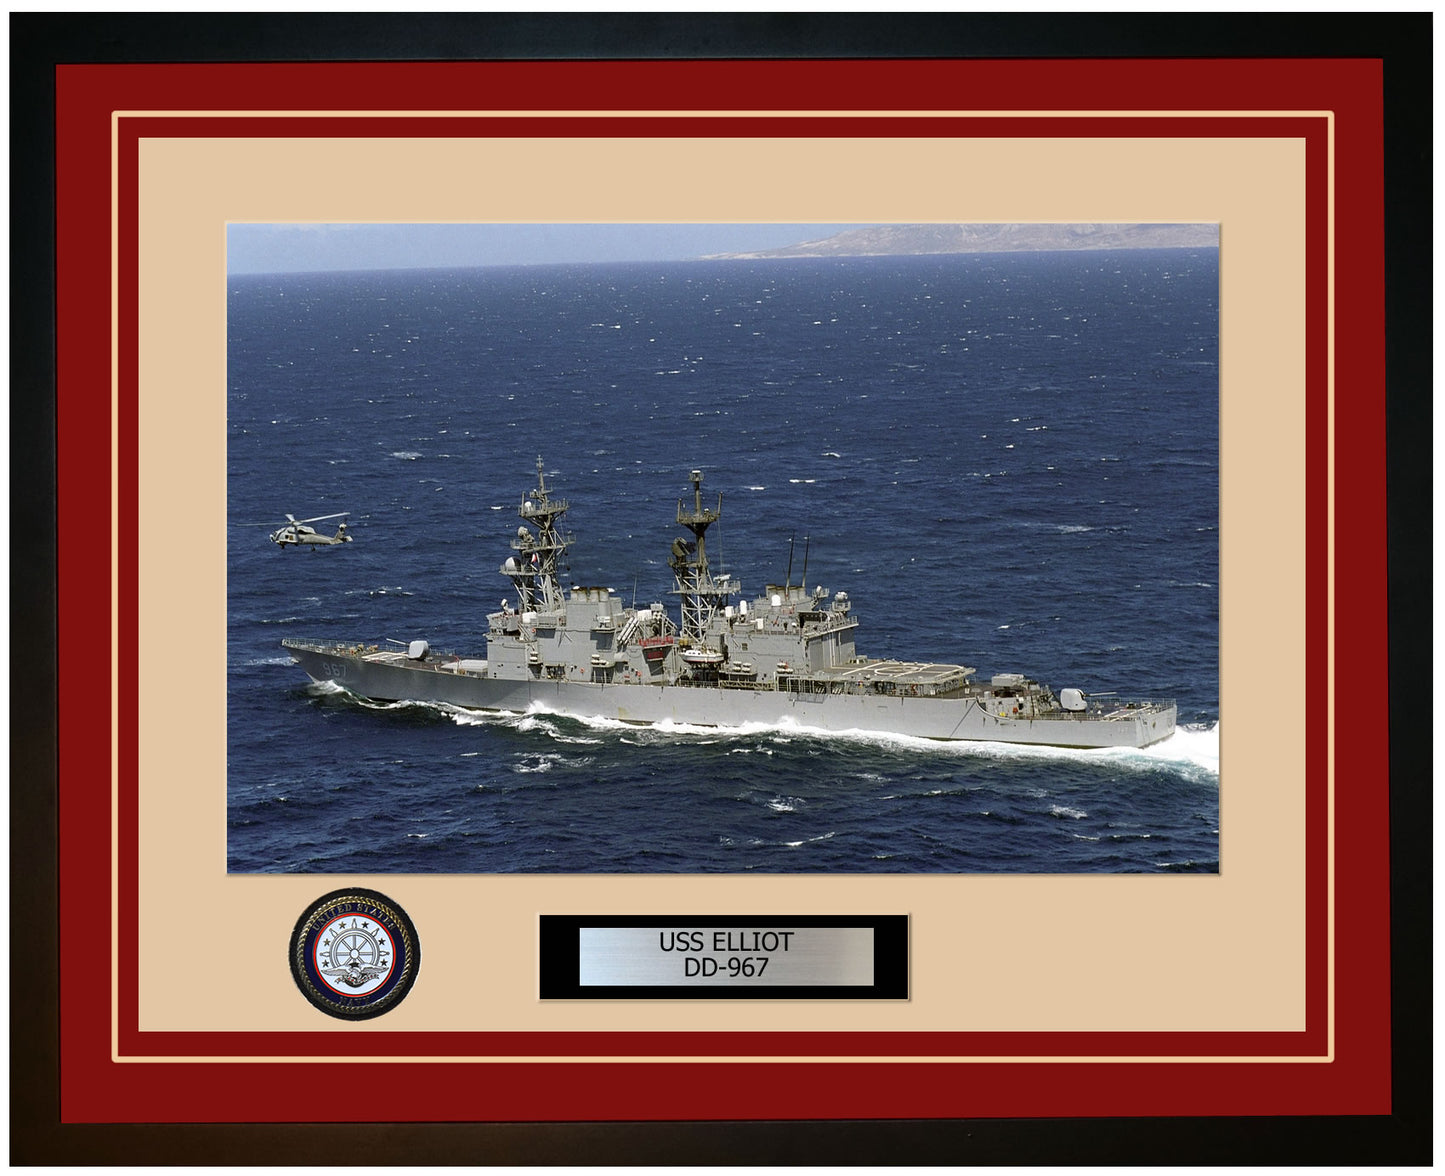 USS ELLIOT DD-967 Framed Navy Ship Photo Burgundy